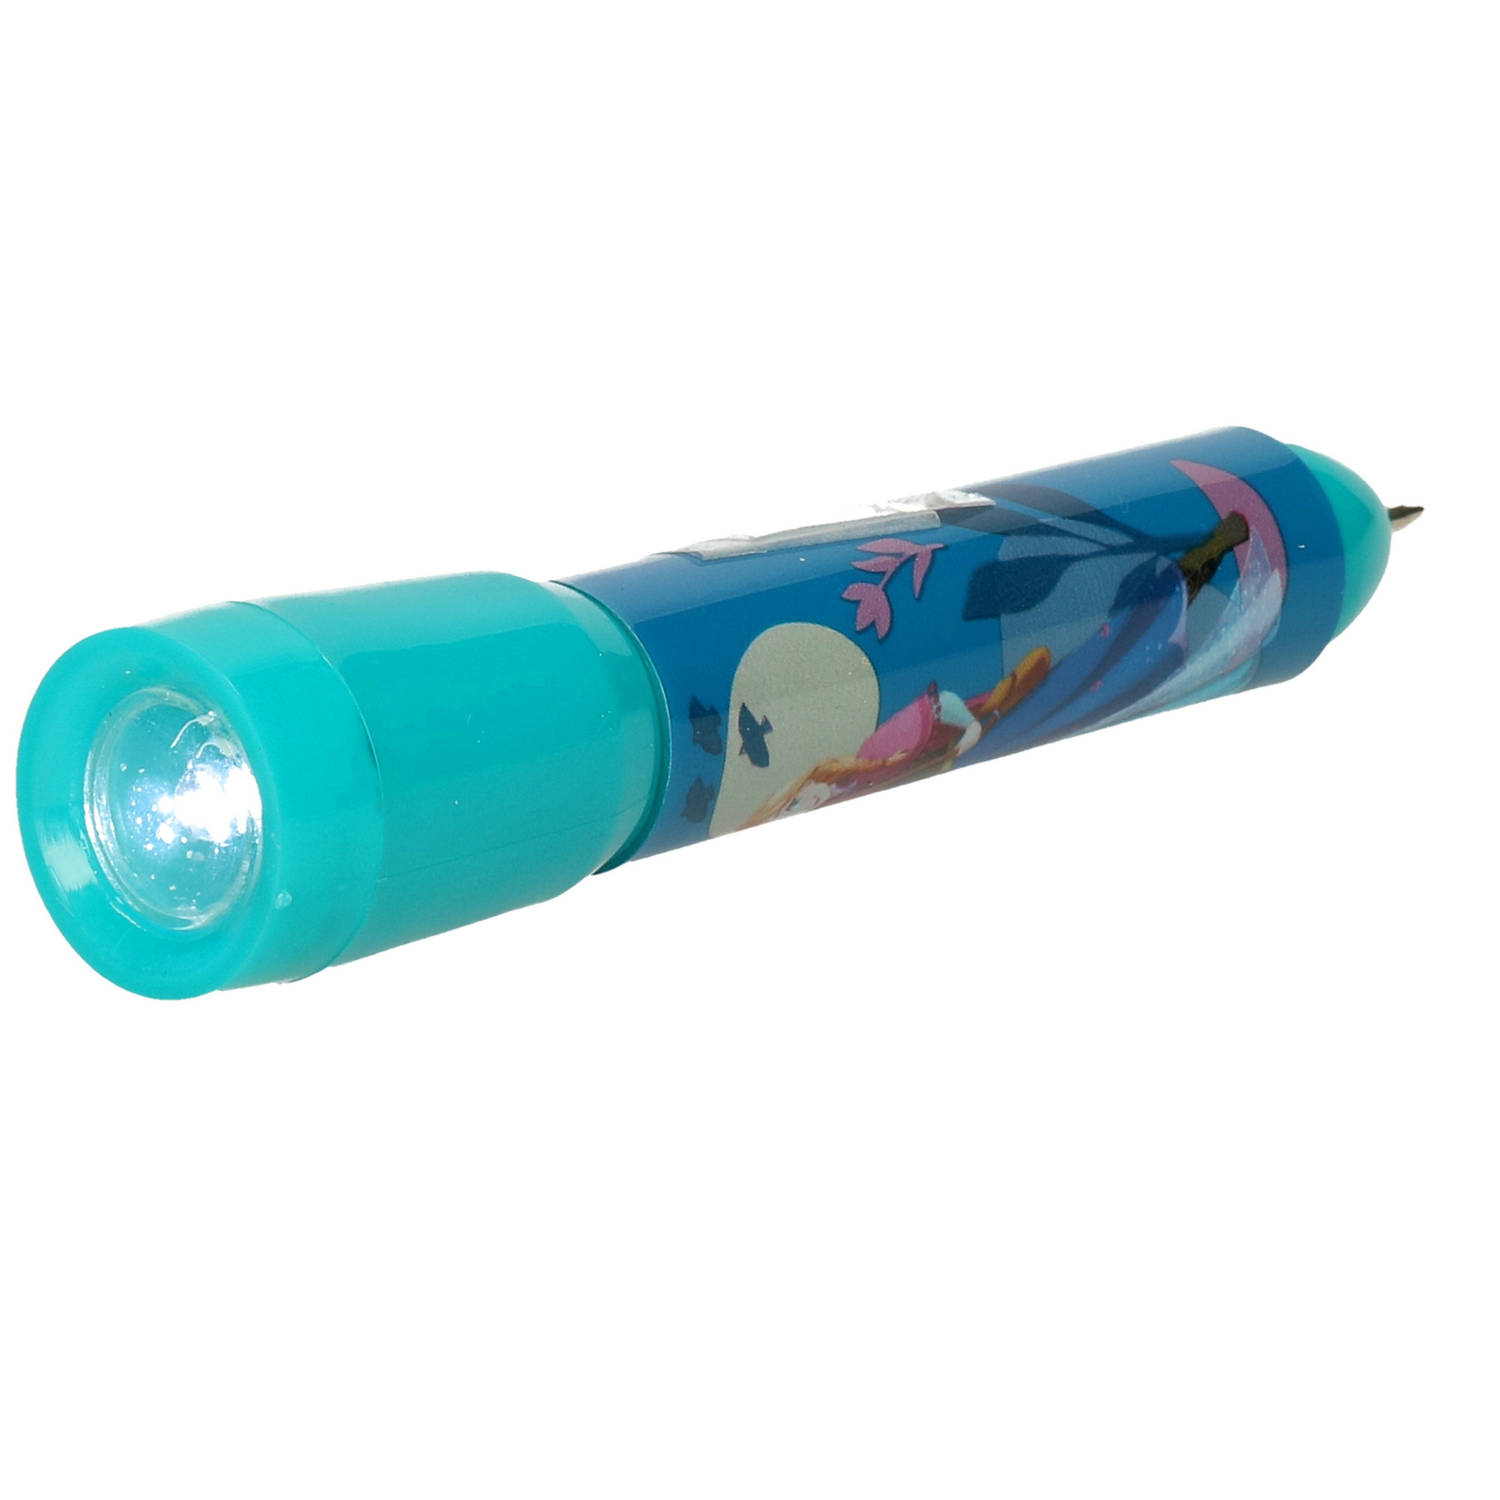 Disney Frozen kinder zaklamp/leeslamp met pen - blauw - kunststof - 12 x 2 cm - Kinder zaklampen